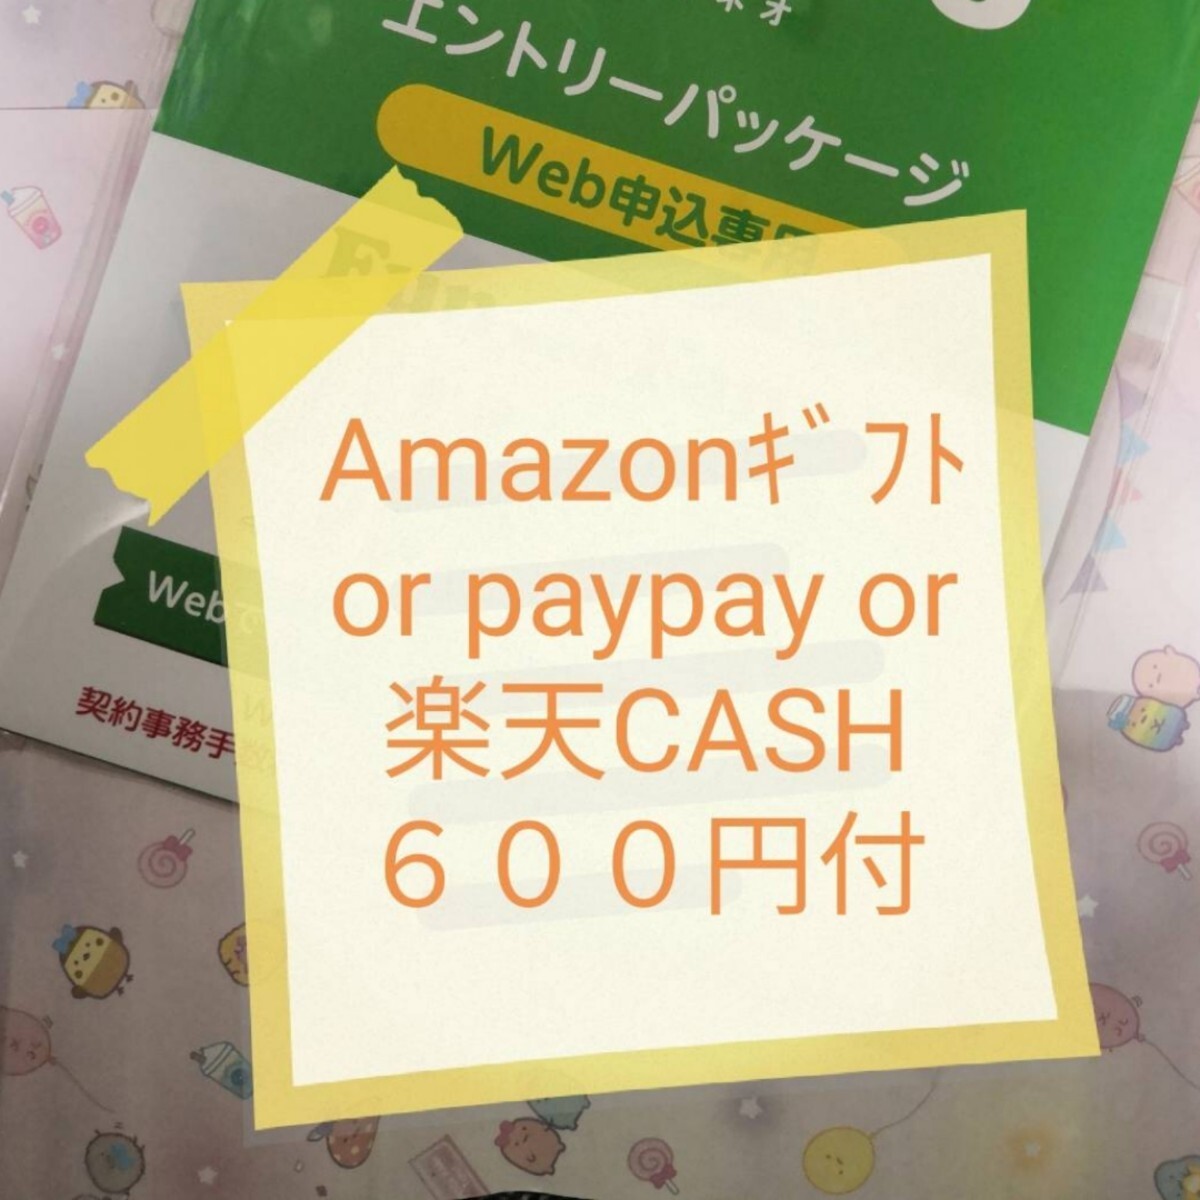  немедленно соответствует с подарком 600 иен есть (pay/ama/ Rakuten ) мой .. акция соответствует mineo мой Neo вход упаковка код ознакомление URL приглашение 511